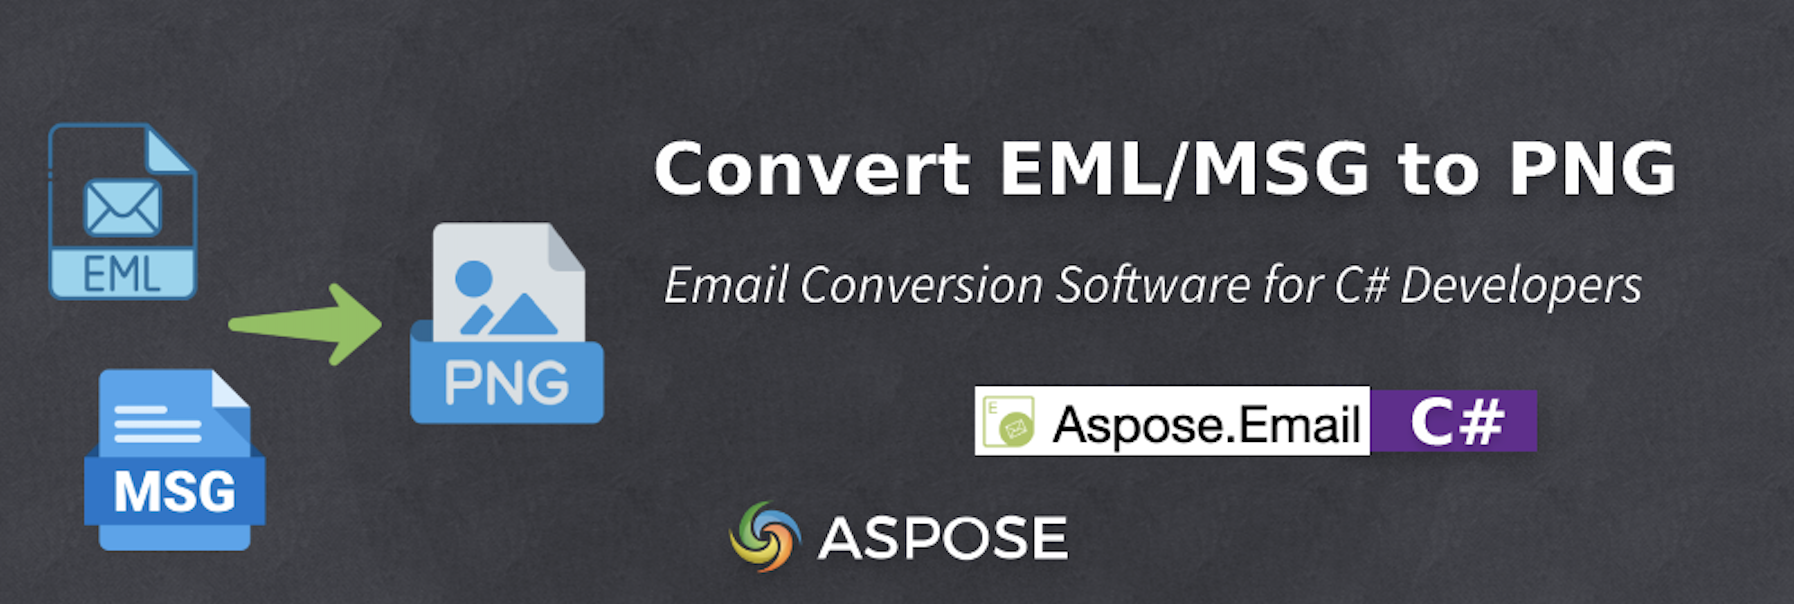 E-postkonverteringsprogram för C#-utvecklare - EML till PNG